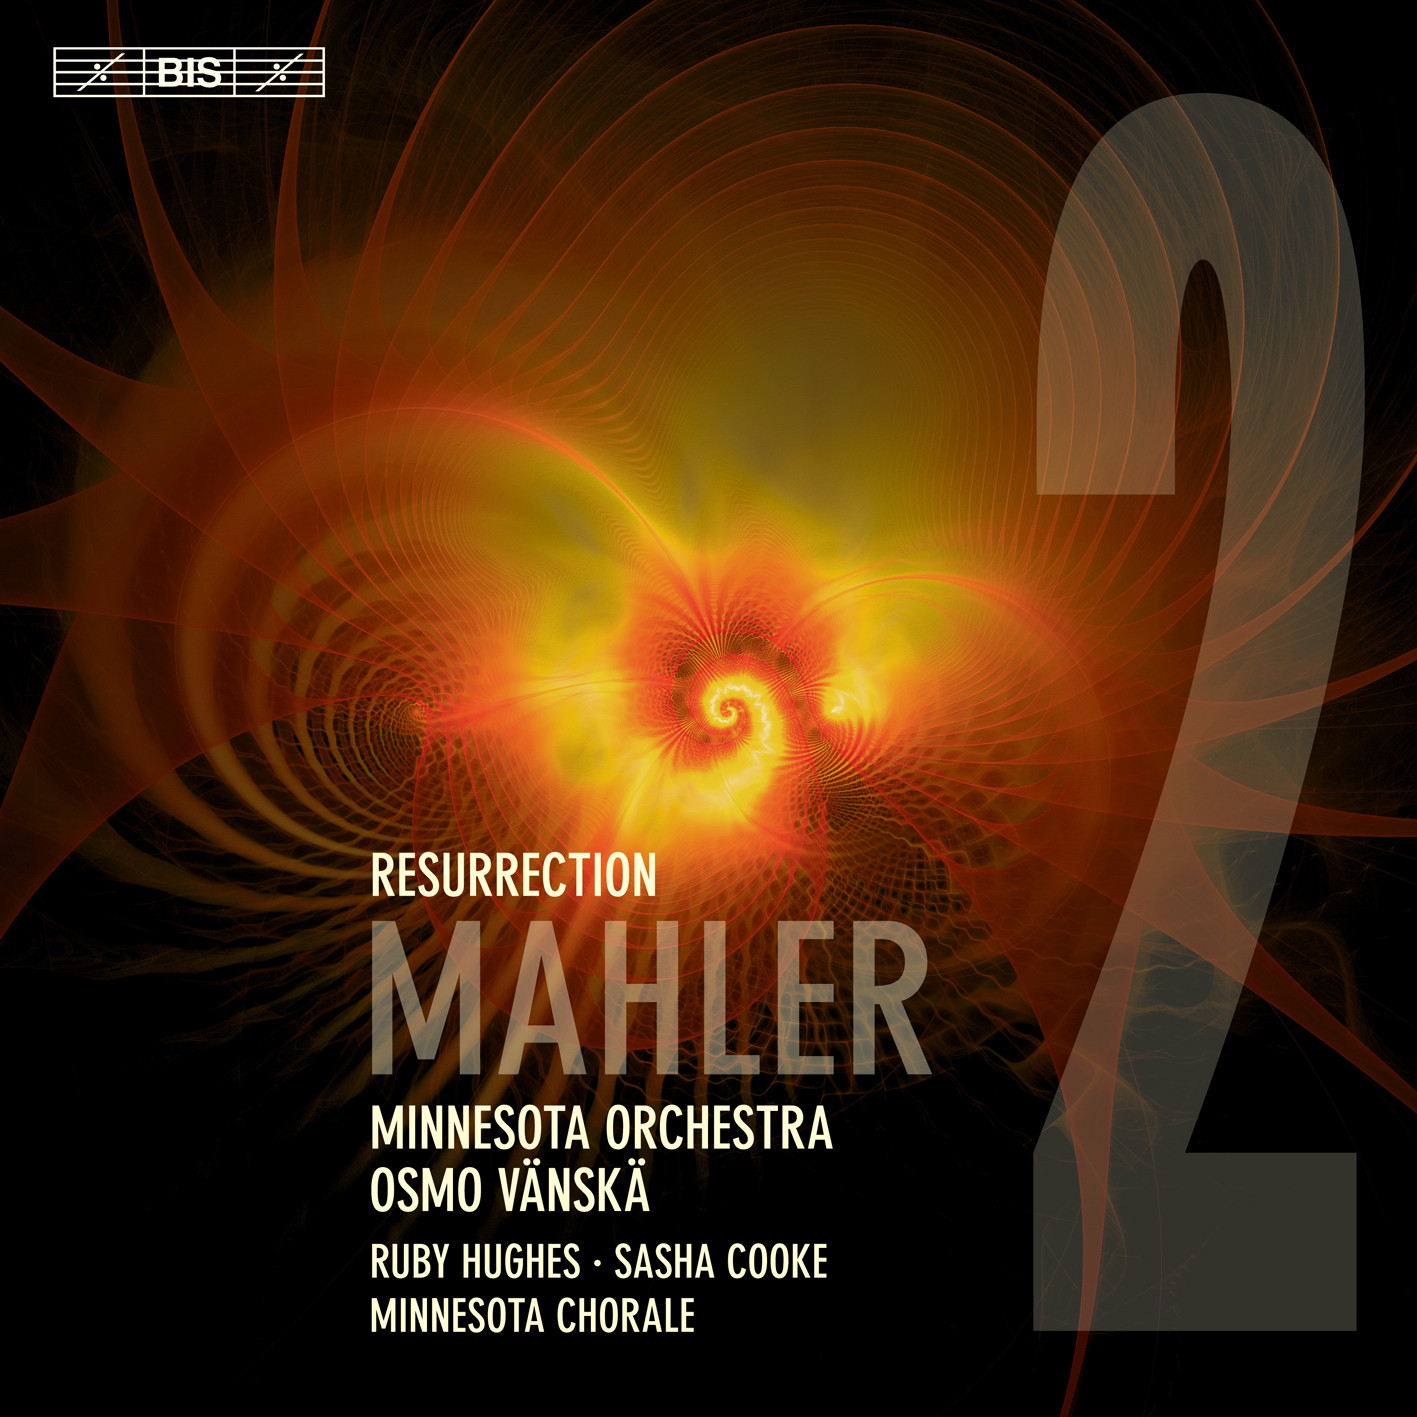 Minnesota Orchestra & Osmo Vanska - Mahler: Symphony No. 2 ‘Resurrection’ (2019) [FLAC 24bit/96kHz]